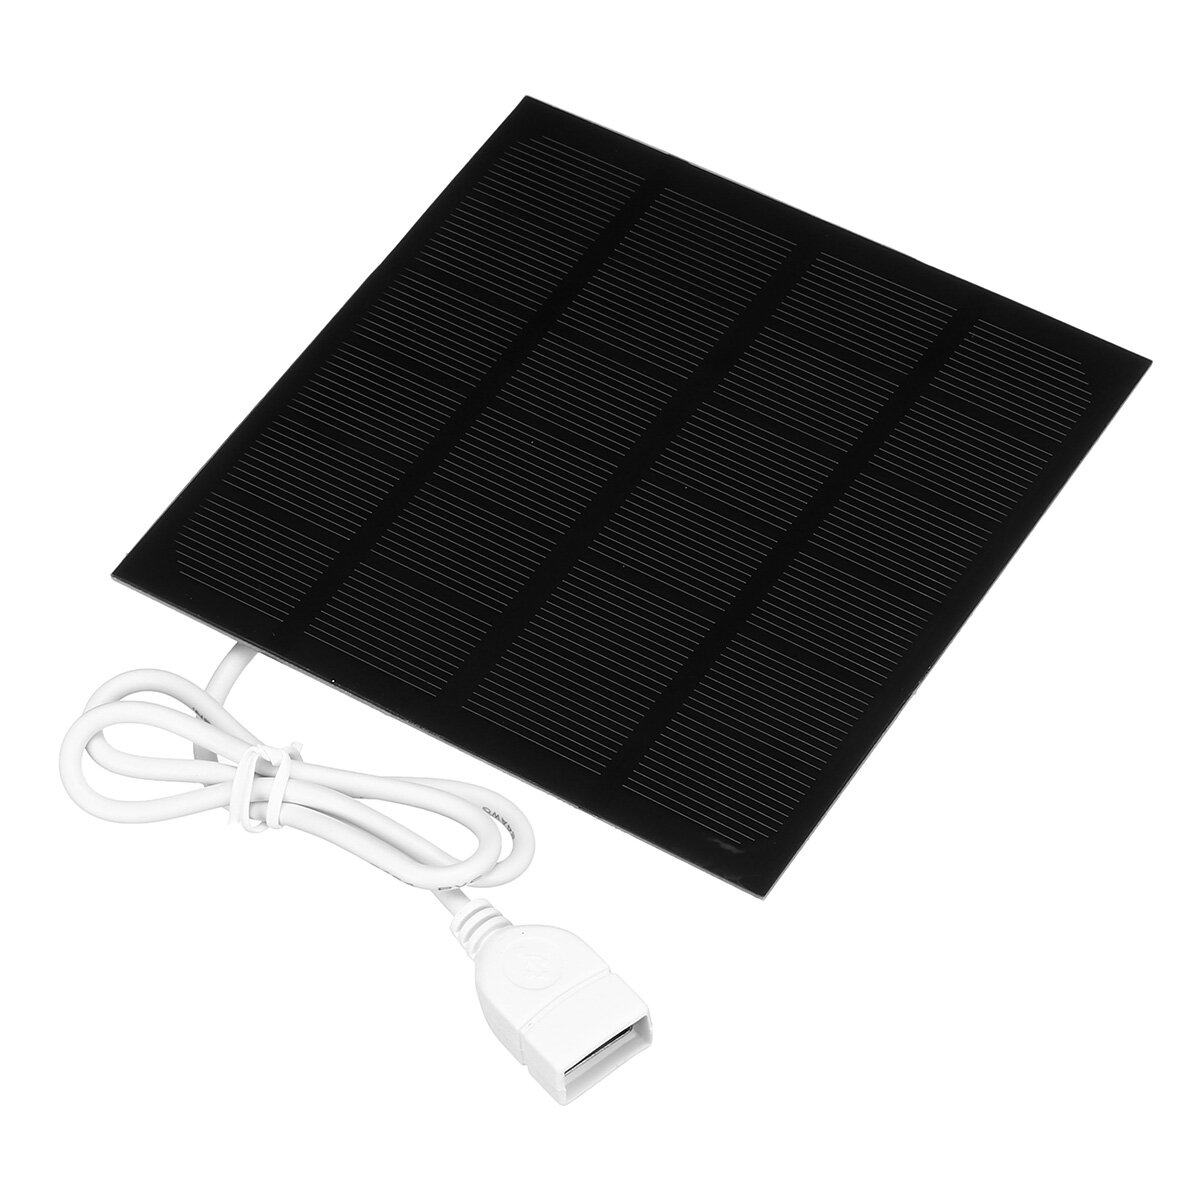 

6V 2W Солнечная Панельное зарядное устройство Монокристаллический USB Солнечная Сотовый телефон Мобильный повер банк Зар